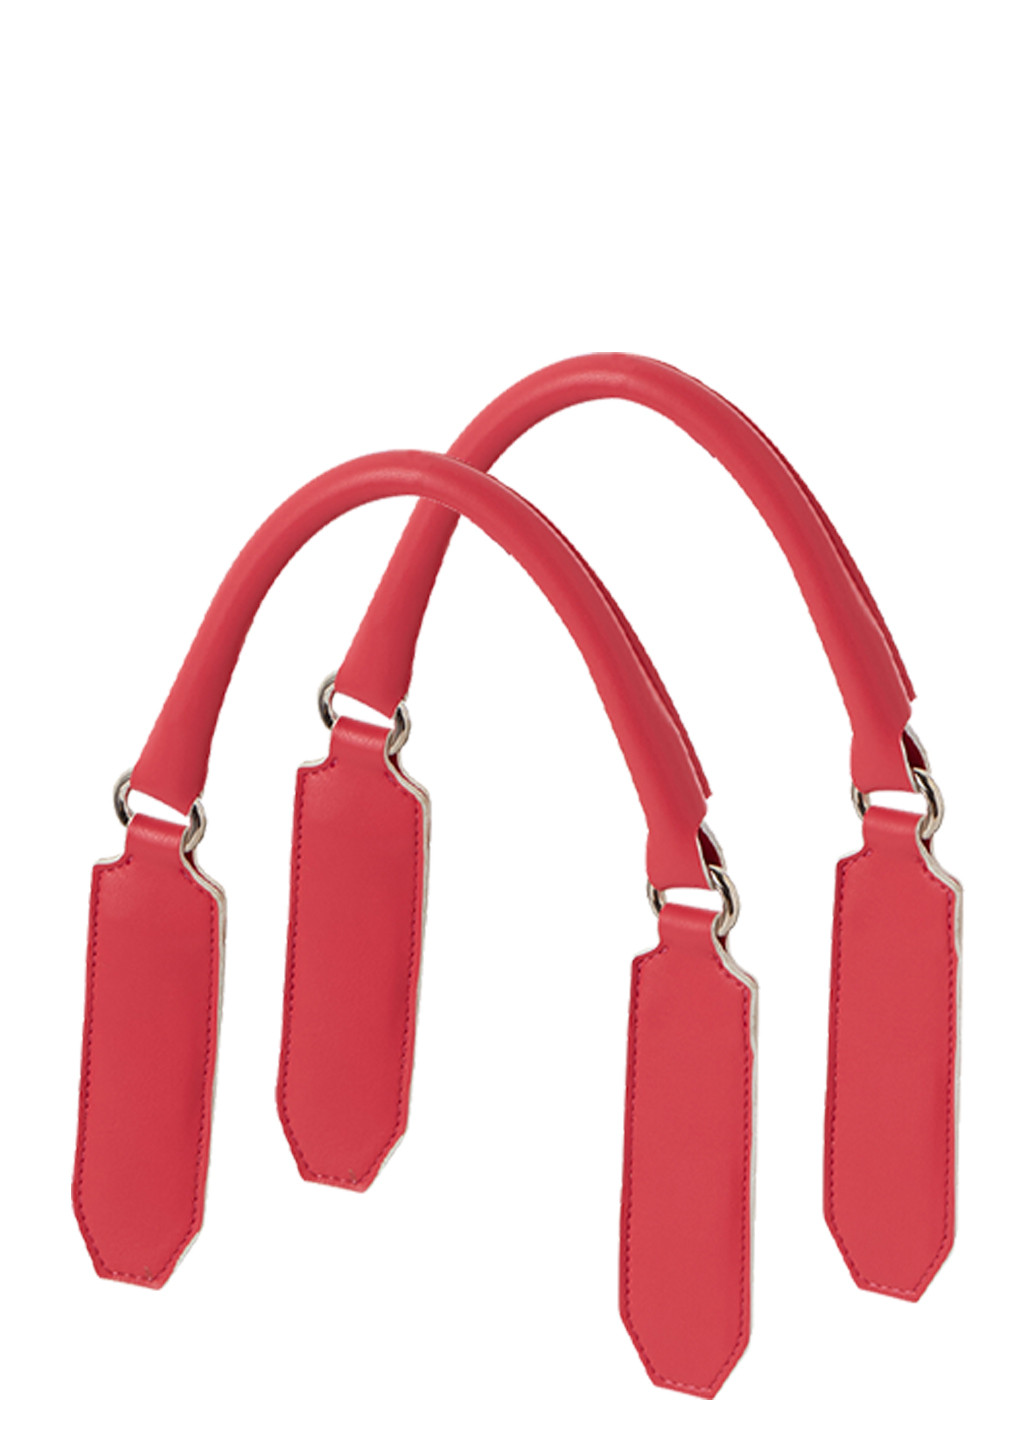 Жіноча червона сумка O bag mini (231579941)